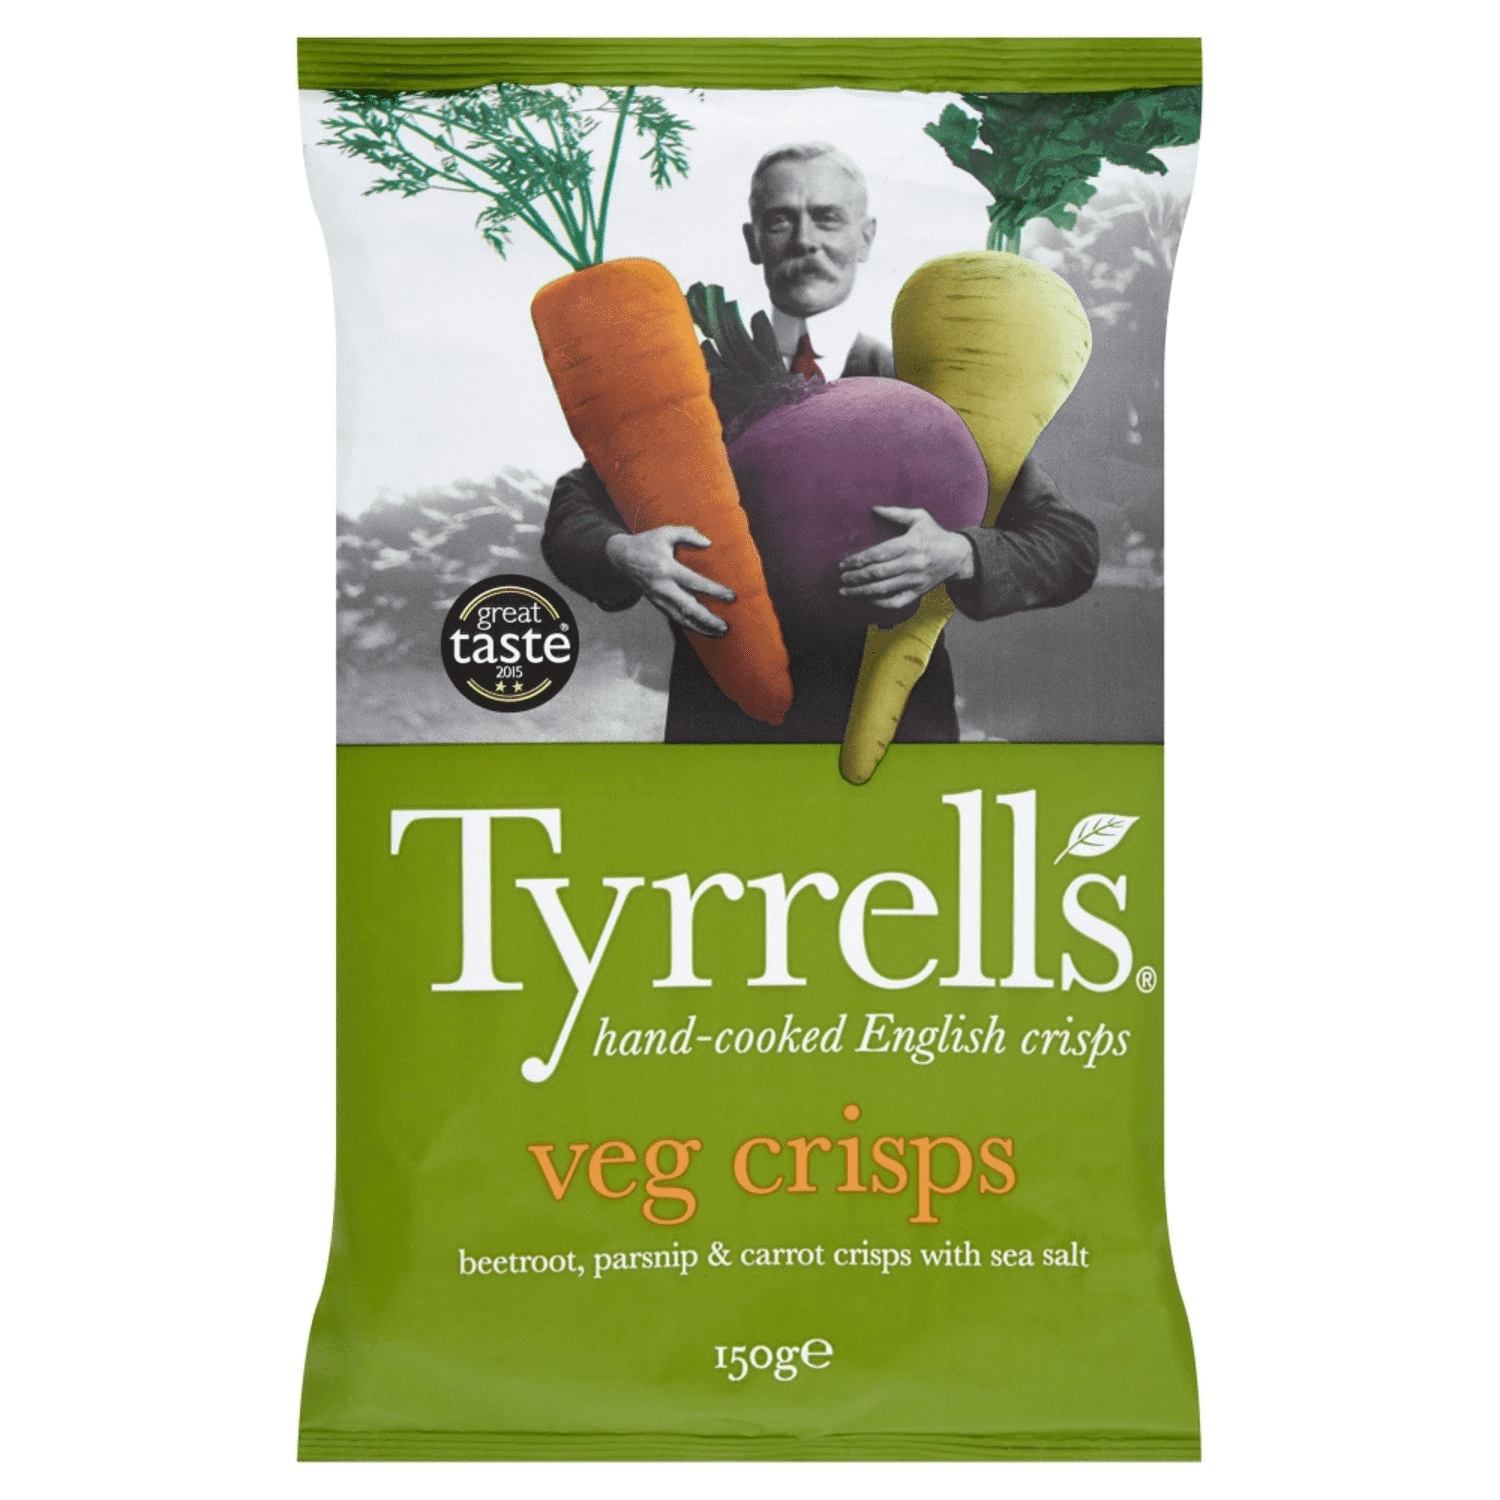 薯条蔬菜薯条 150g - TYRRELL’S